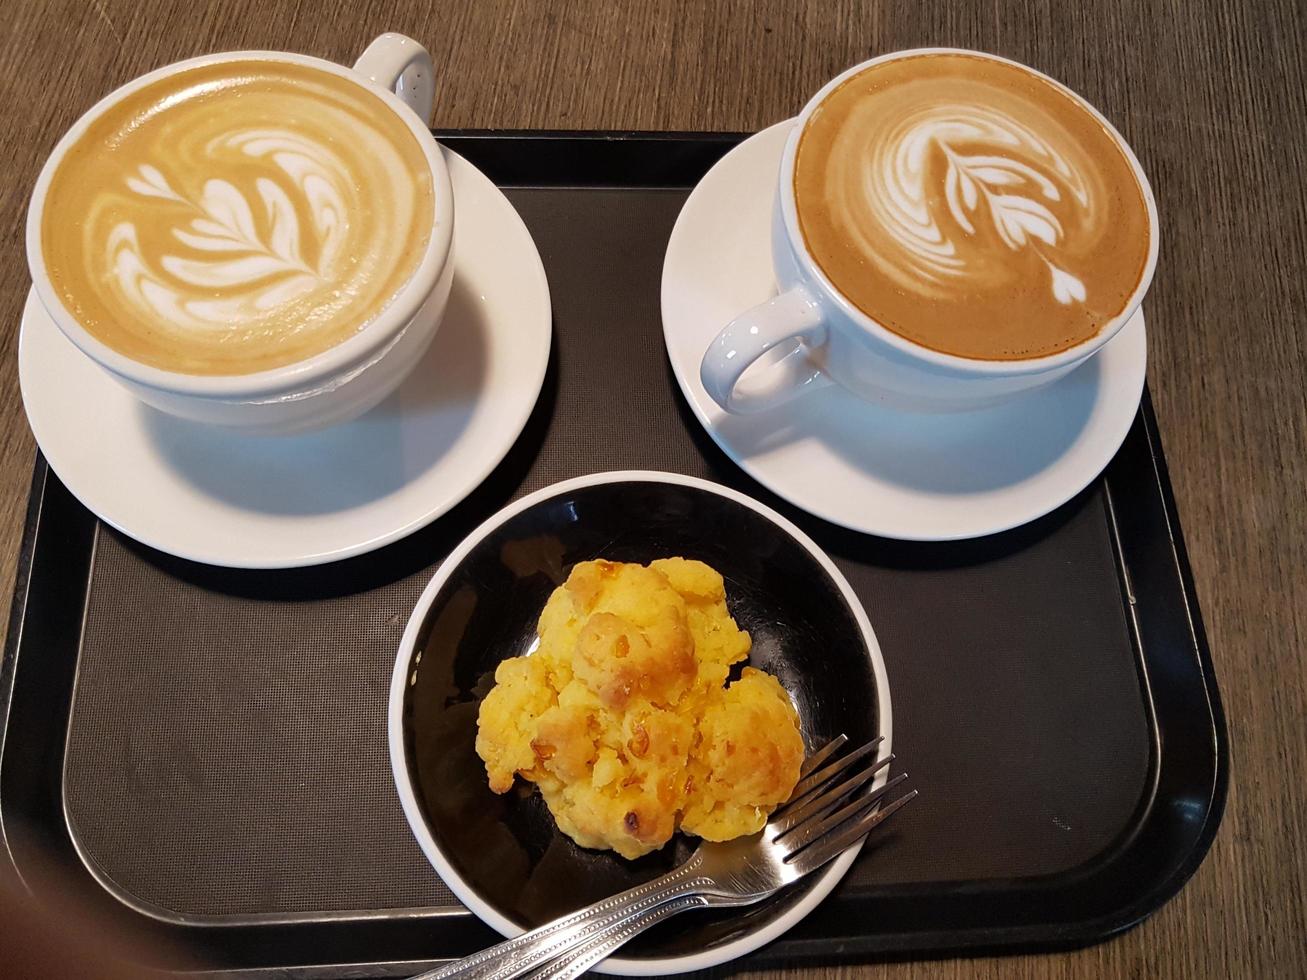 två mjölkkaffe med unik form på kryddan och snacks på tallriken foto